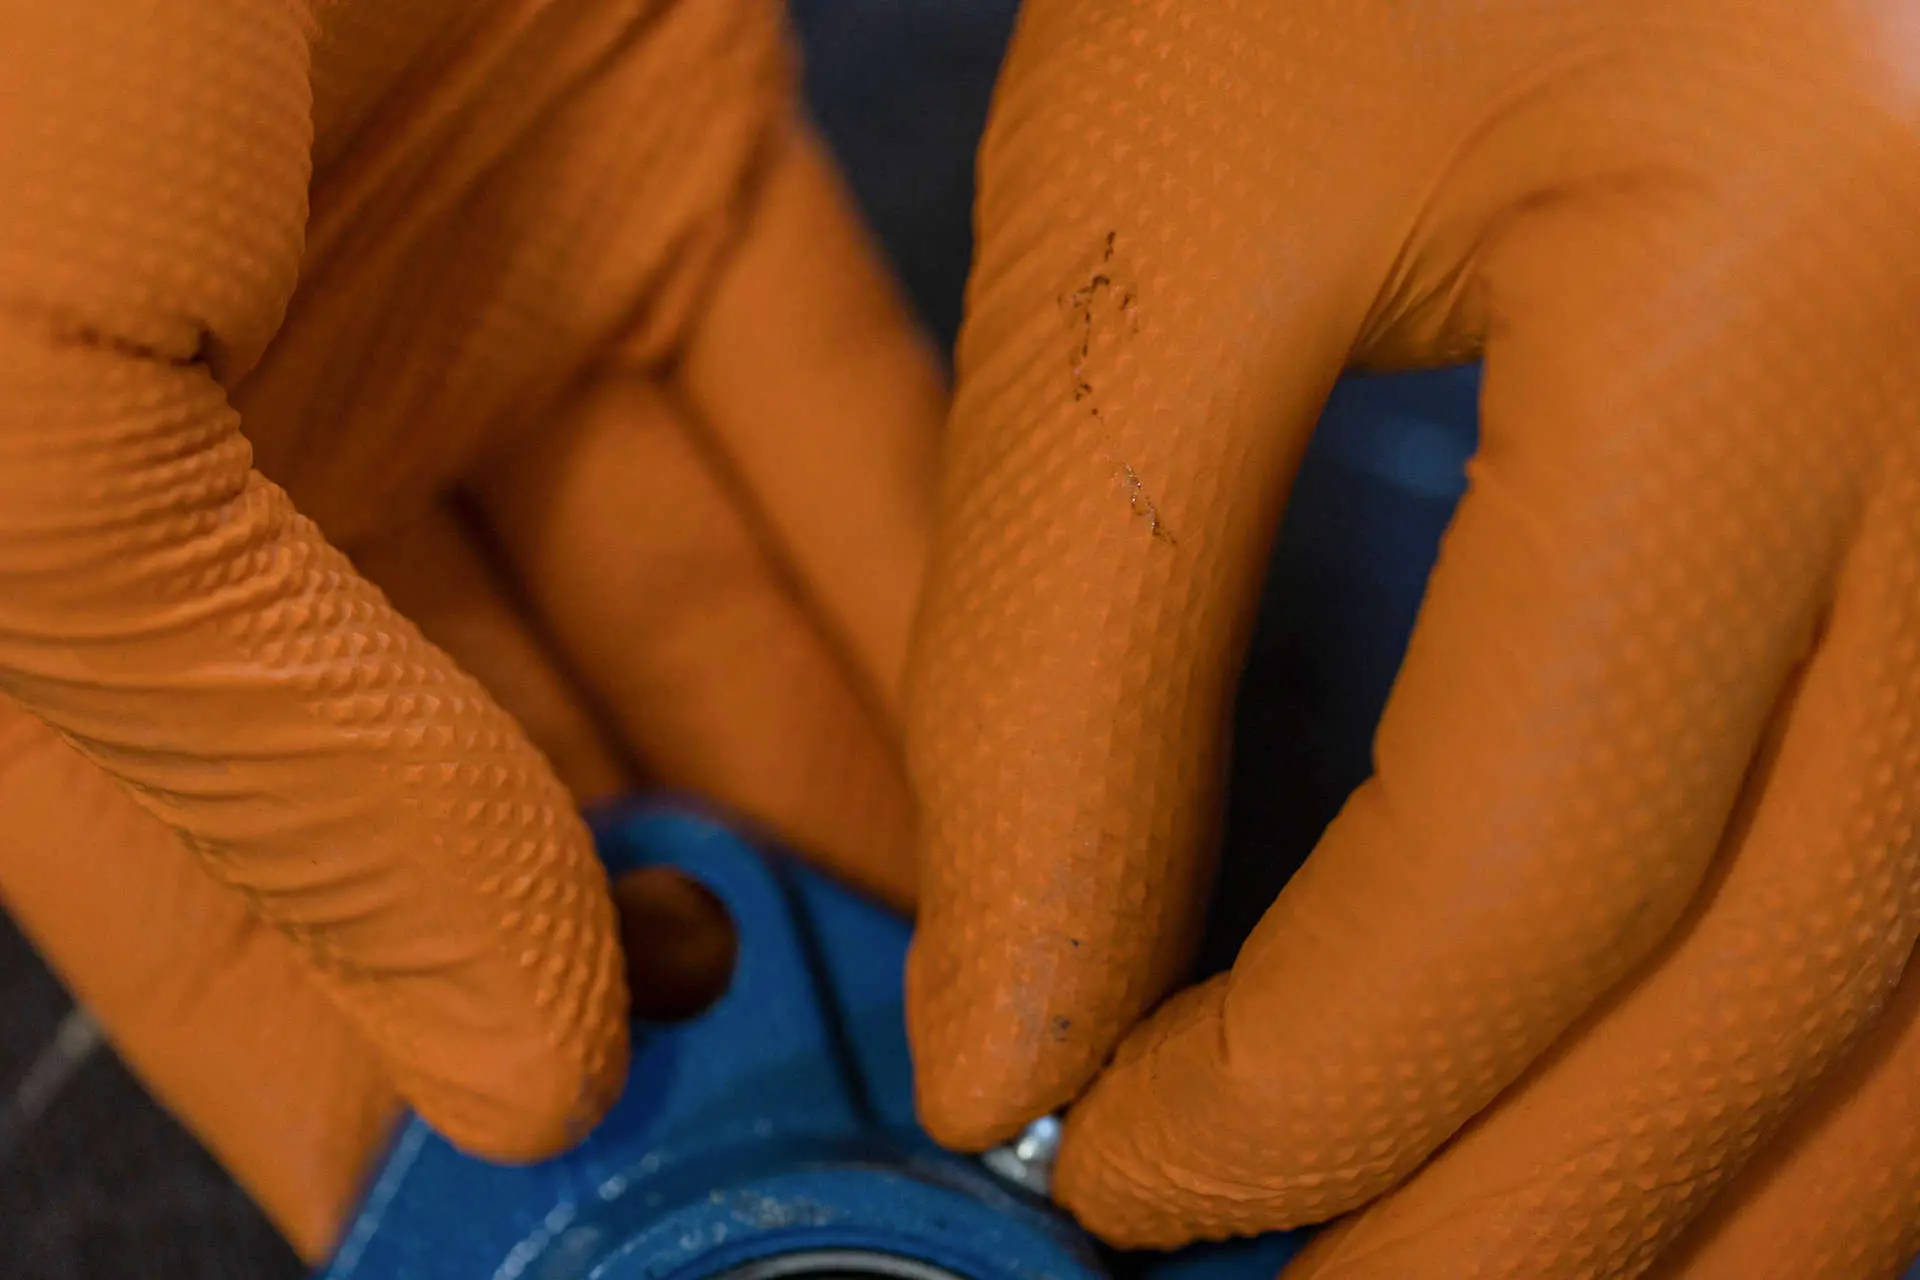 Nitrile Dispos. Glove X-Grip 240mm, 50 pcs, Size XL, orange